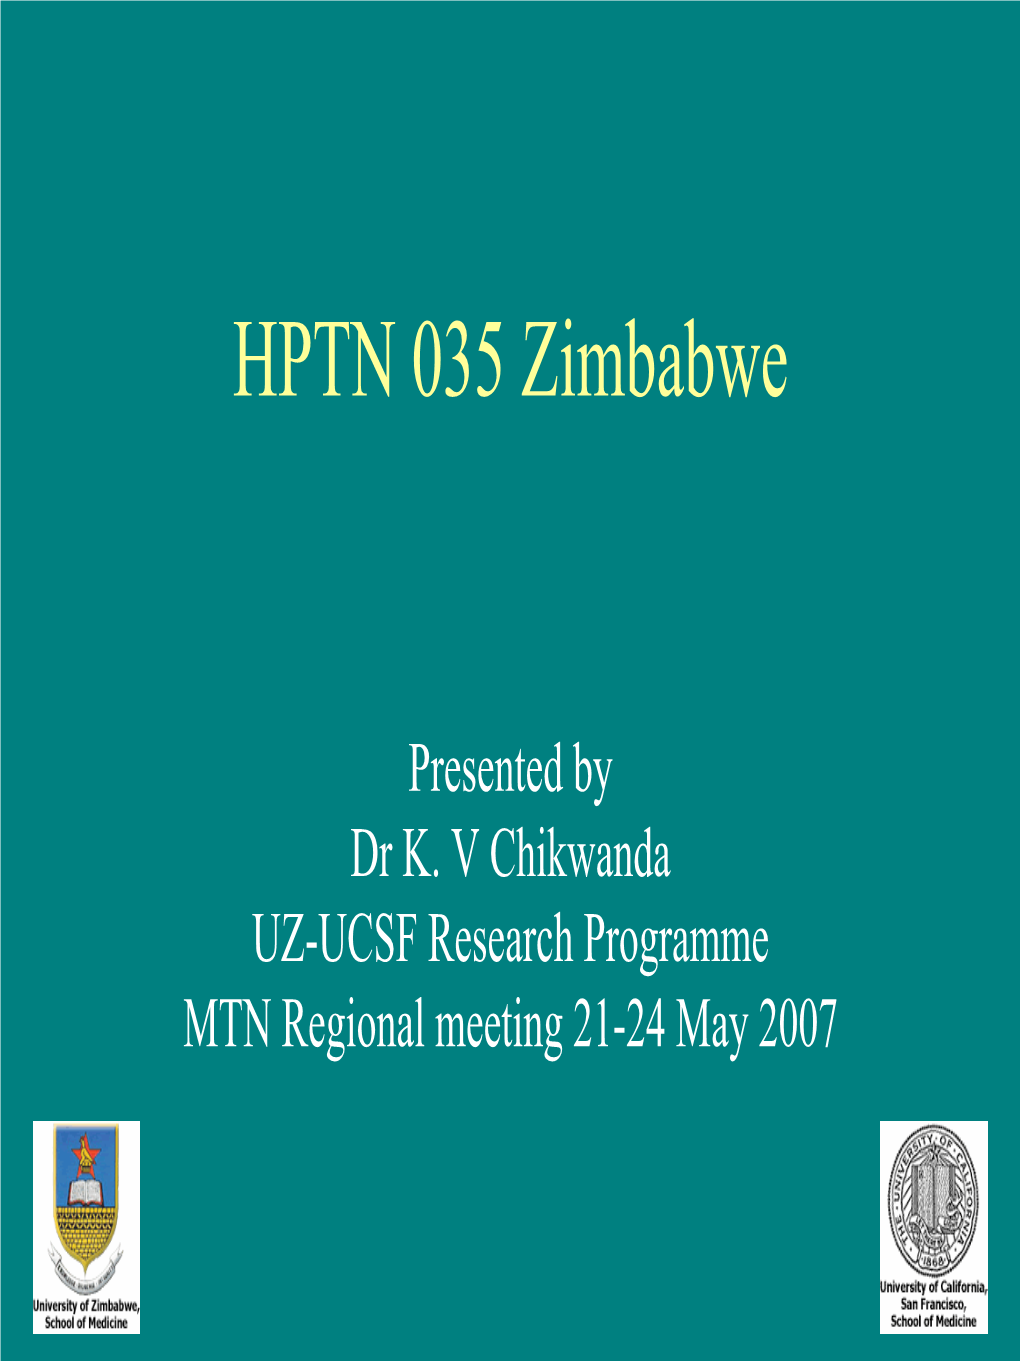 HPTN 035 Zimbabwe